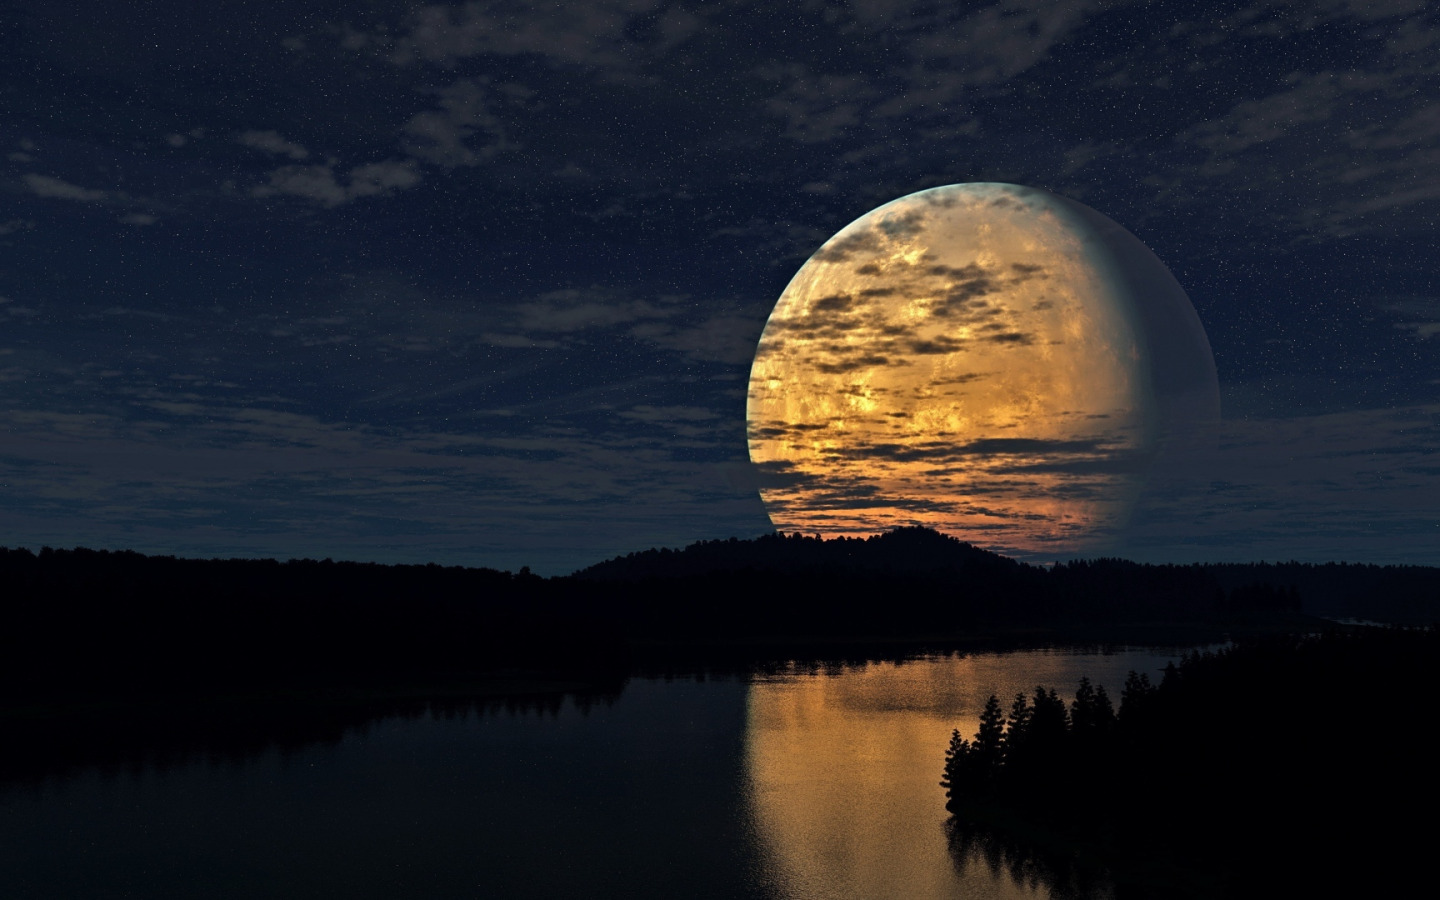 Скачать обои Moon, Sky, Night, River, Trees, раздел пейзажи в разрешении 14...